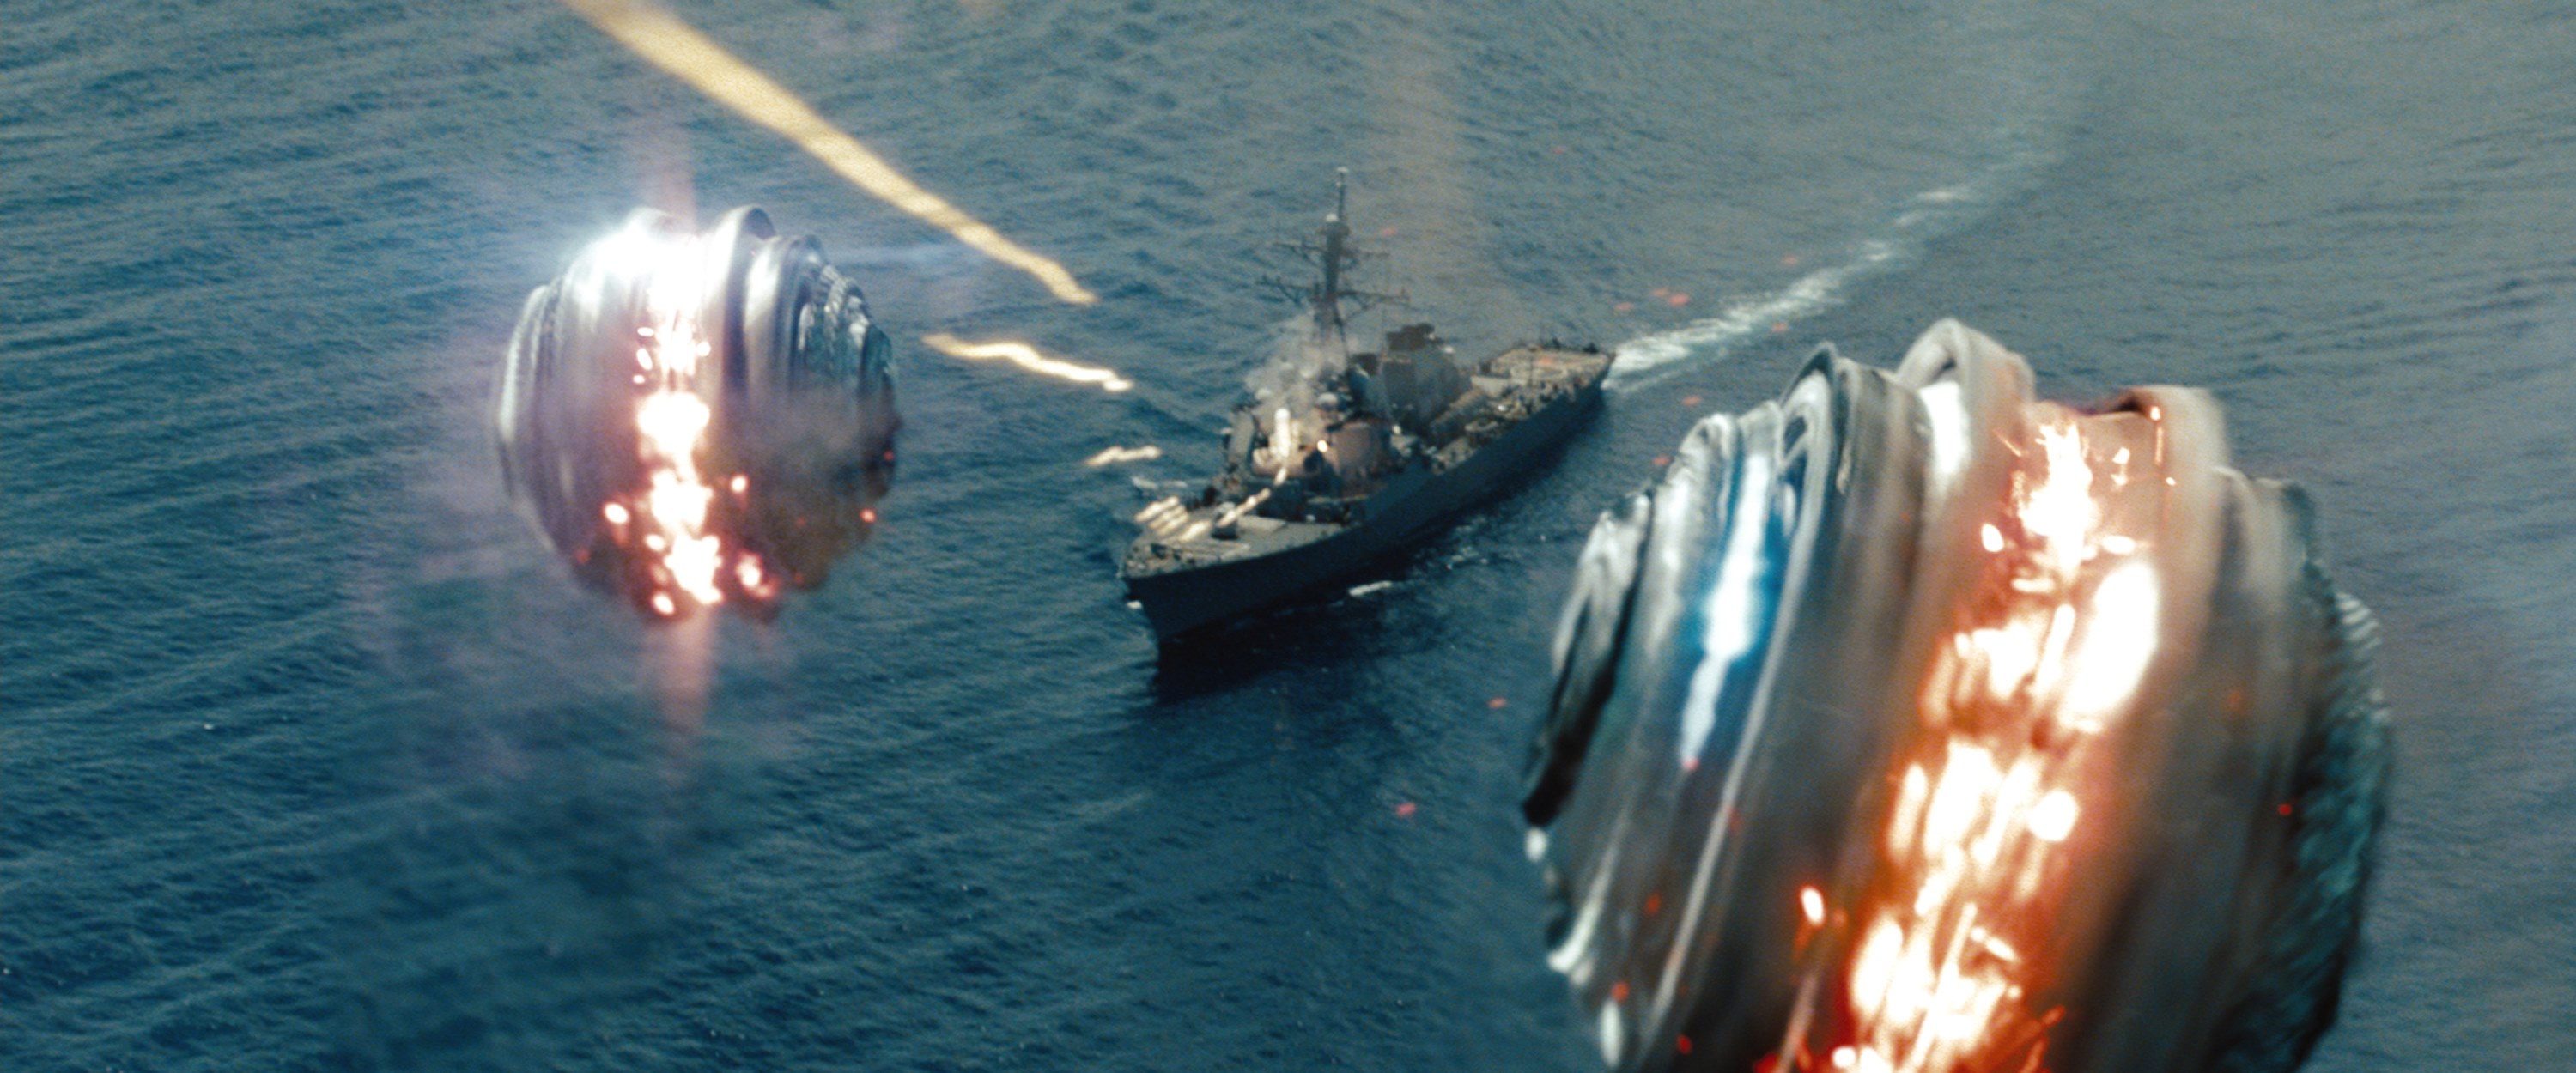 Battleship Movie Image 